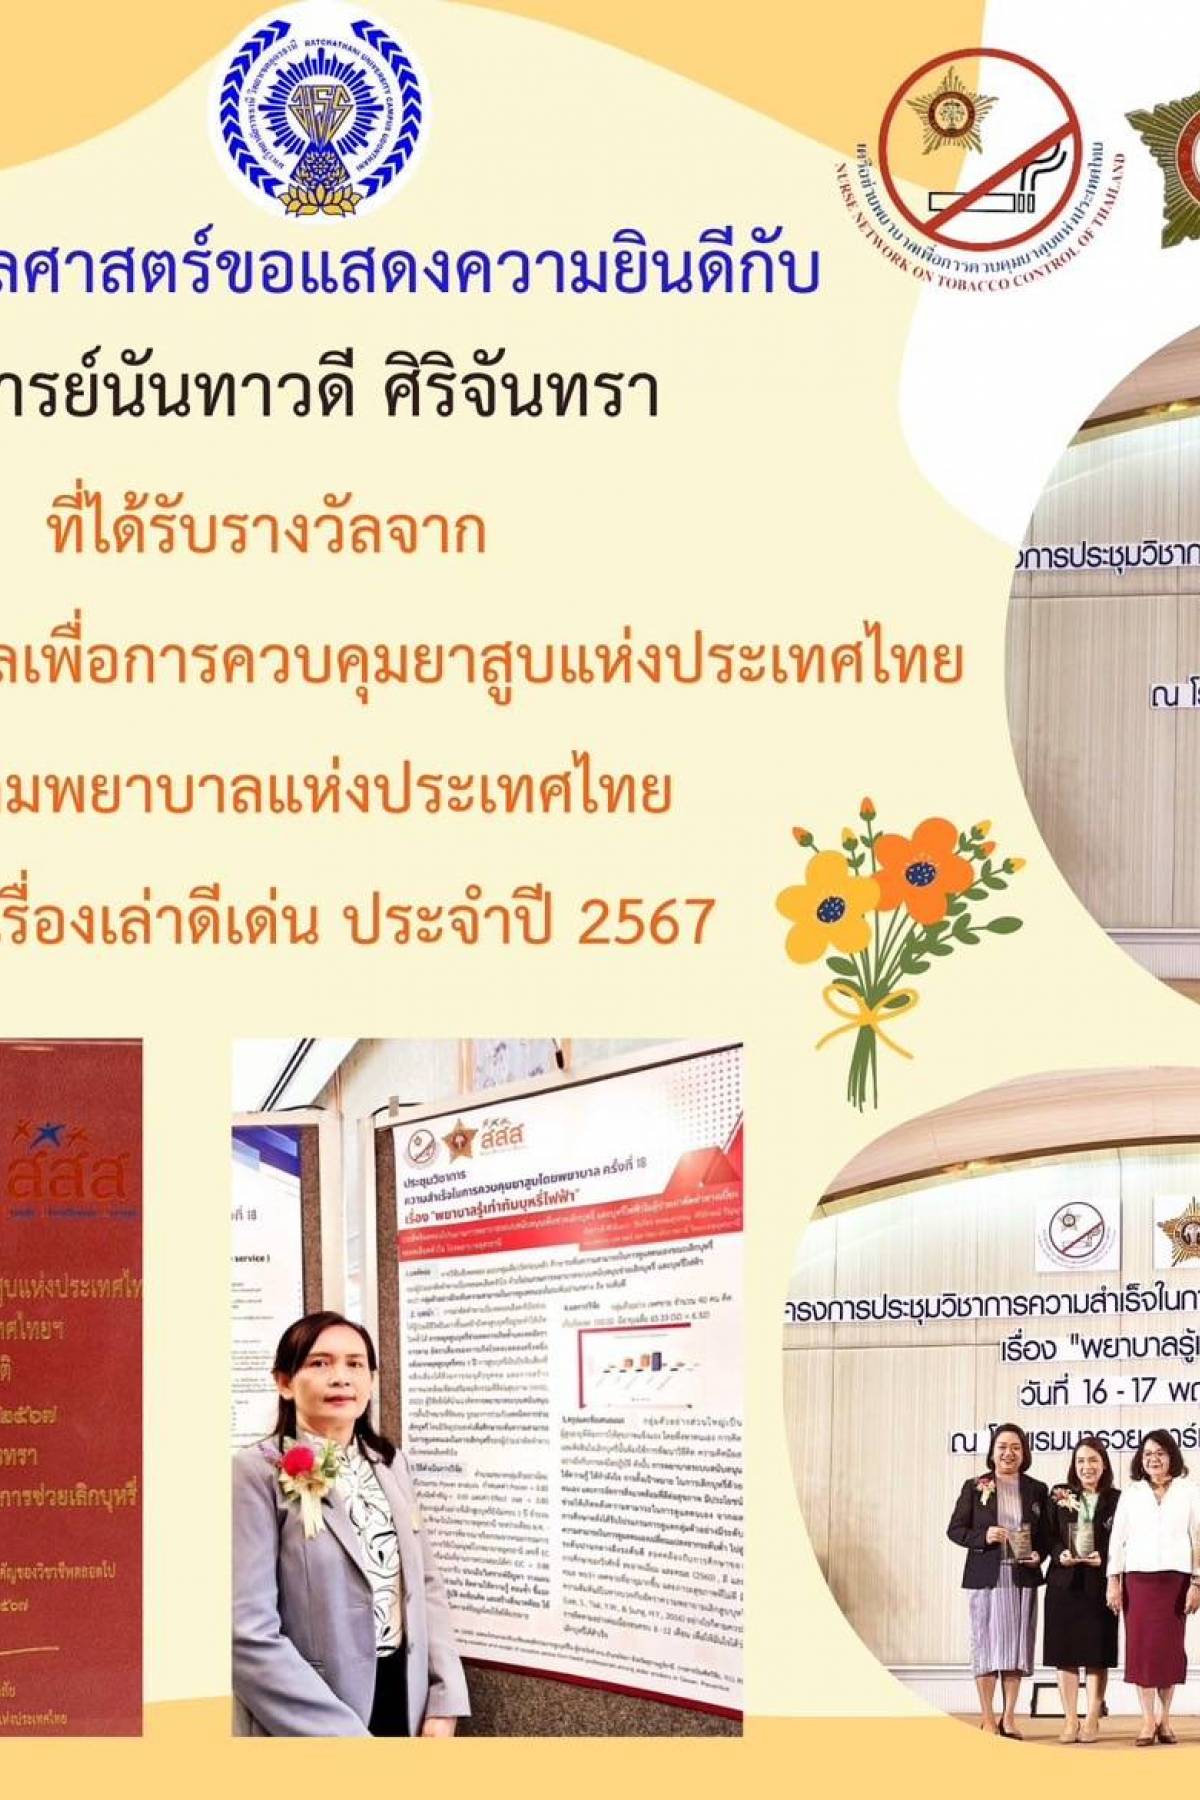 ขอแสดงความยินดีกับ อาจารย์นันทาวดี ศิริจันทรา ที่ได้รับรางวัลจากเครือข่ายพยาบาลเพื่อการควบคุมยาสูบแห่งประเทศไทย สมาคมพยาบาลแห่งประเทศไทย